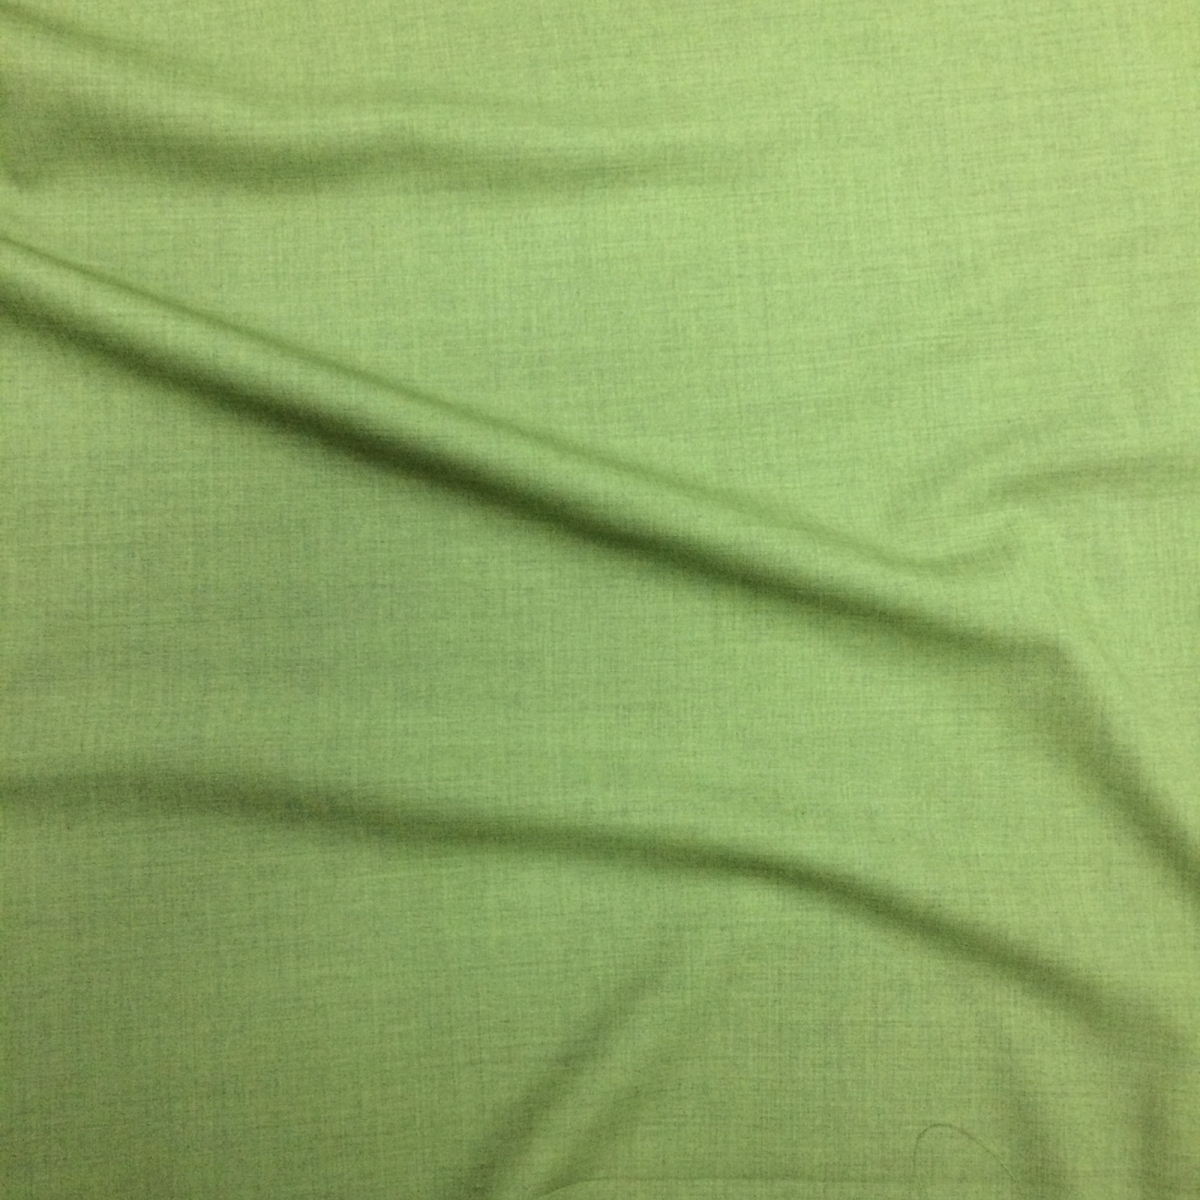 Цвет сукно. Зелень сукна. Сукно цвет молодого гороха. Зеленой морской воды стрейч шерсть костюмная. Шерсть костюмная стрейч оливкового или фисташкового цвета.